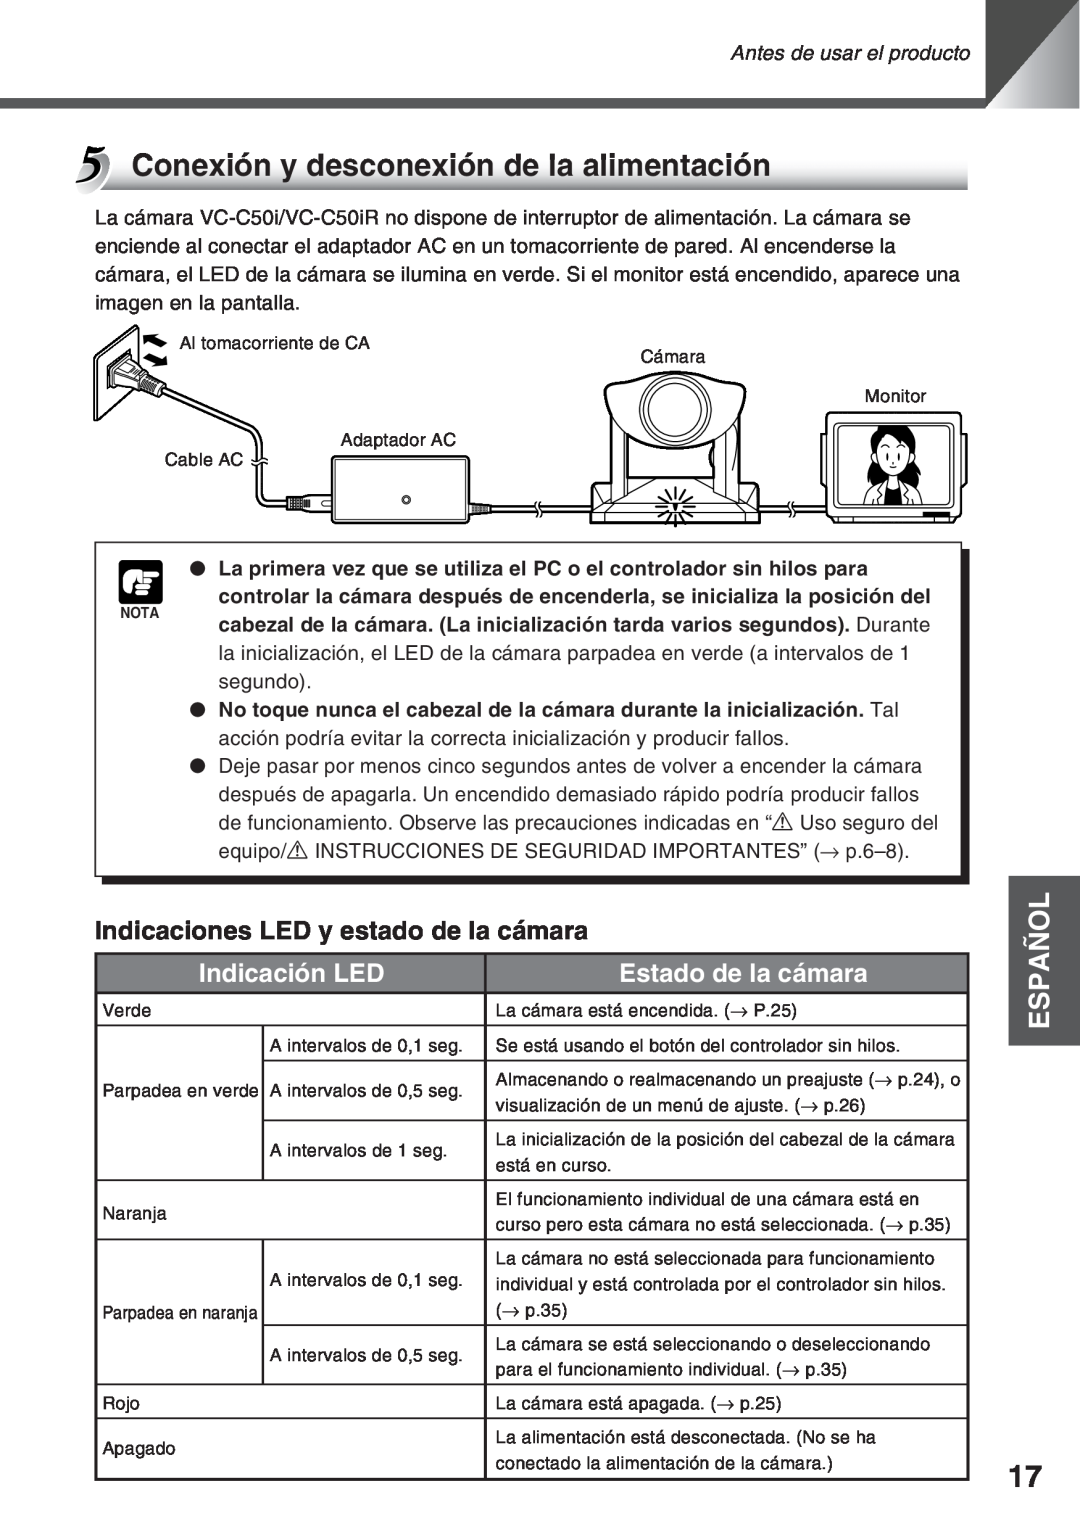 Canon VC-C50IR Conexión y desconexión de la alimentación, Indicaciones LED y estado de la cámara, Indicación LED, Español 